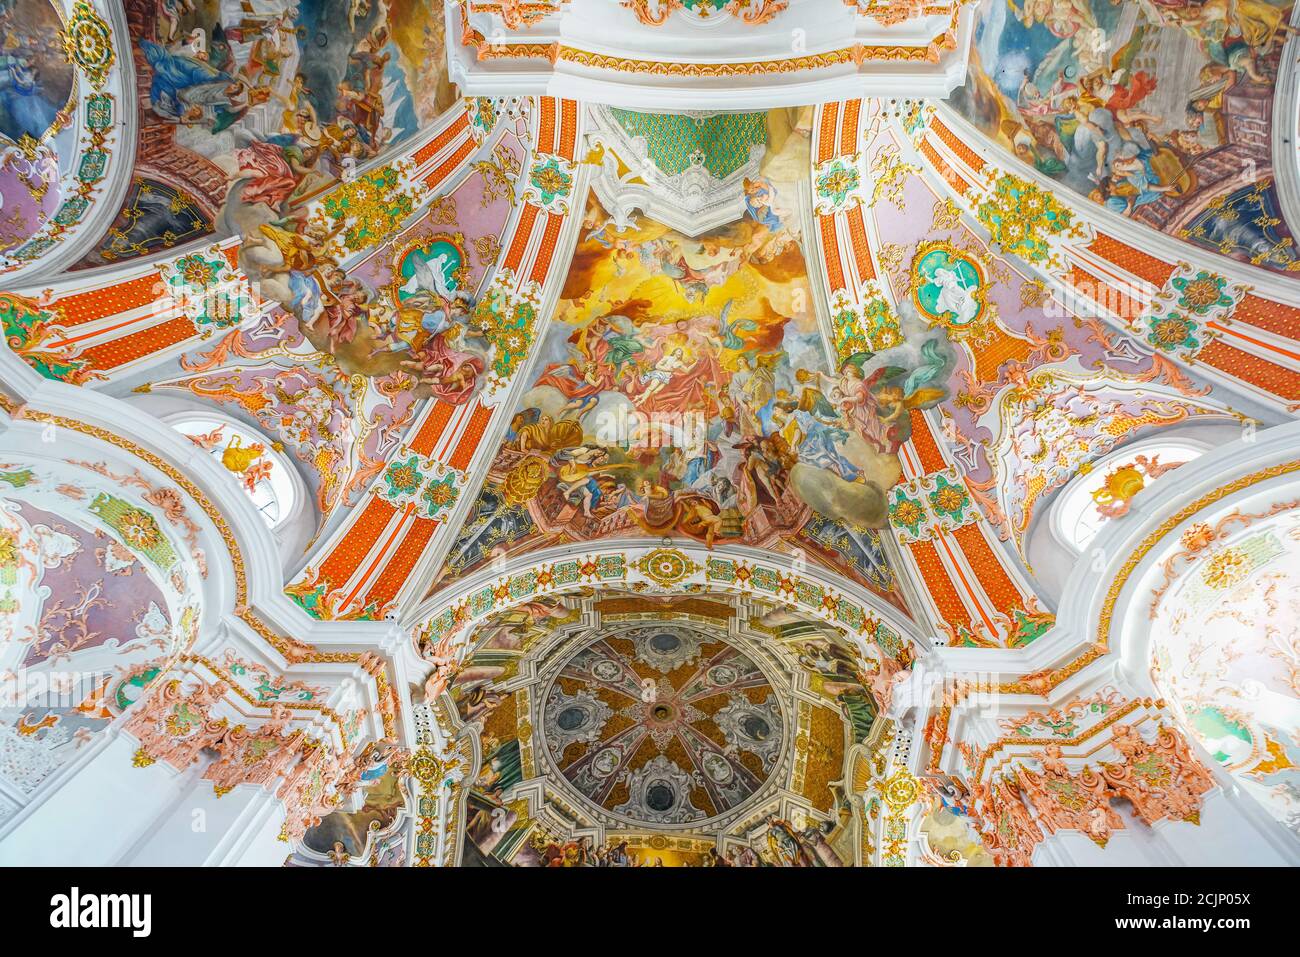 Detalles de las pinturas del techo en la famosa abadía benedictina de Nuestra Señora de los ermitaños en la ciudad de peregrinación de Einsiedeln (el nombre de la ciudad significa ermita) Foto de stock